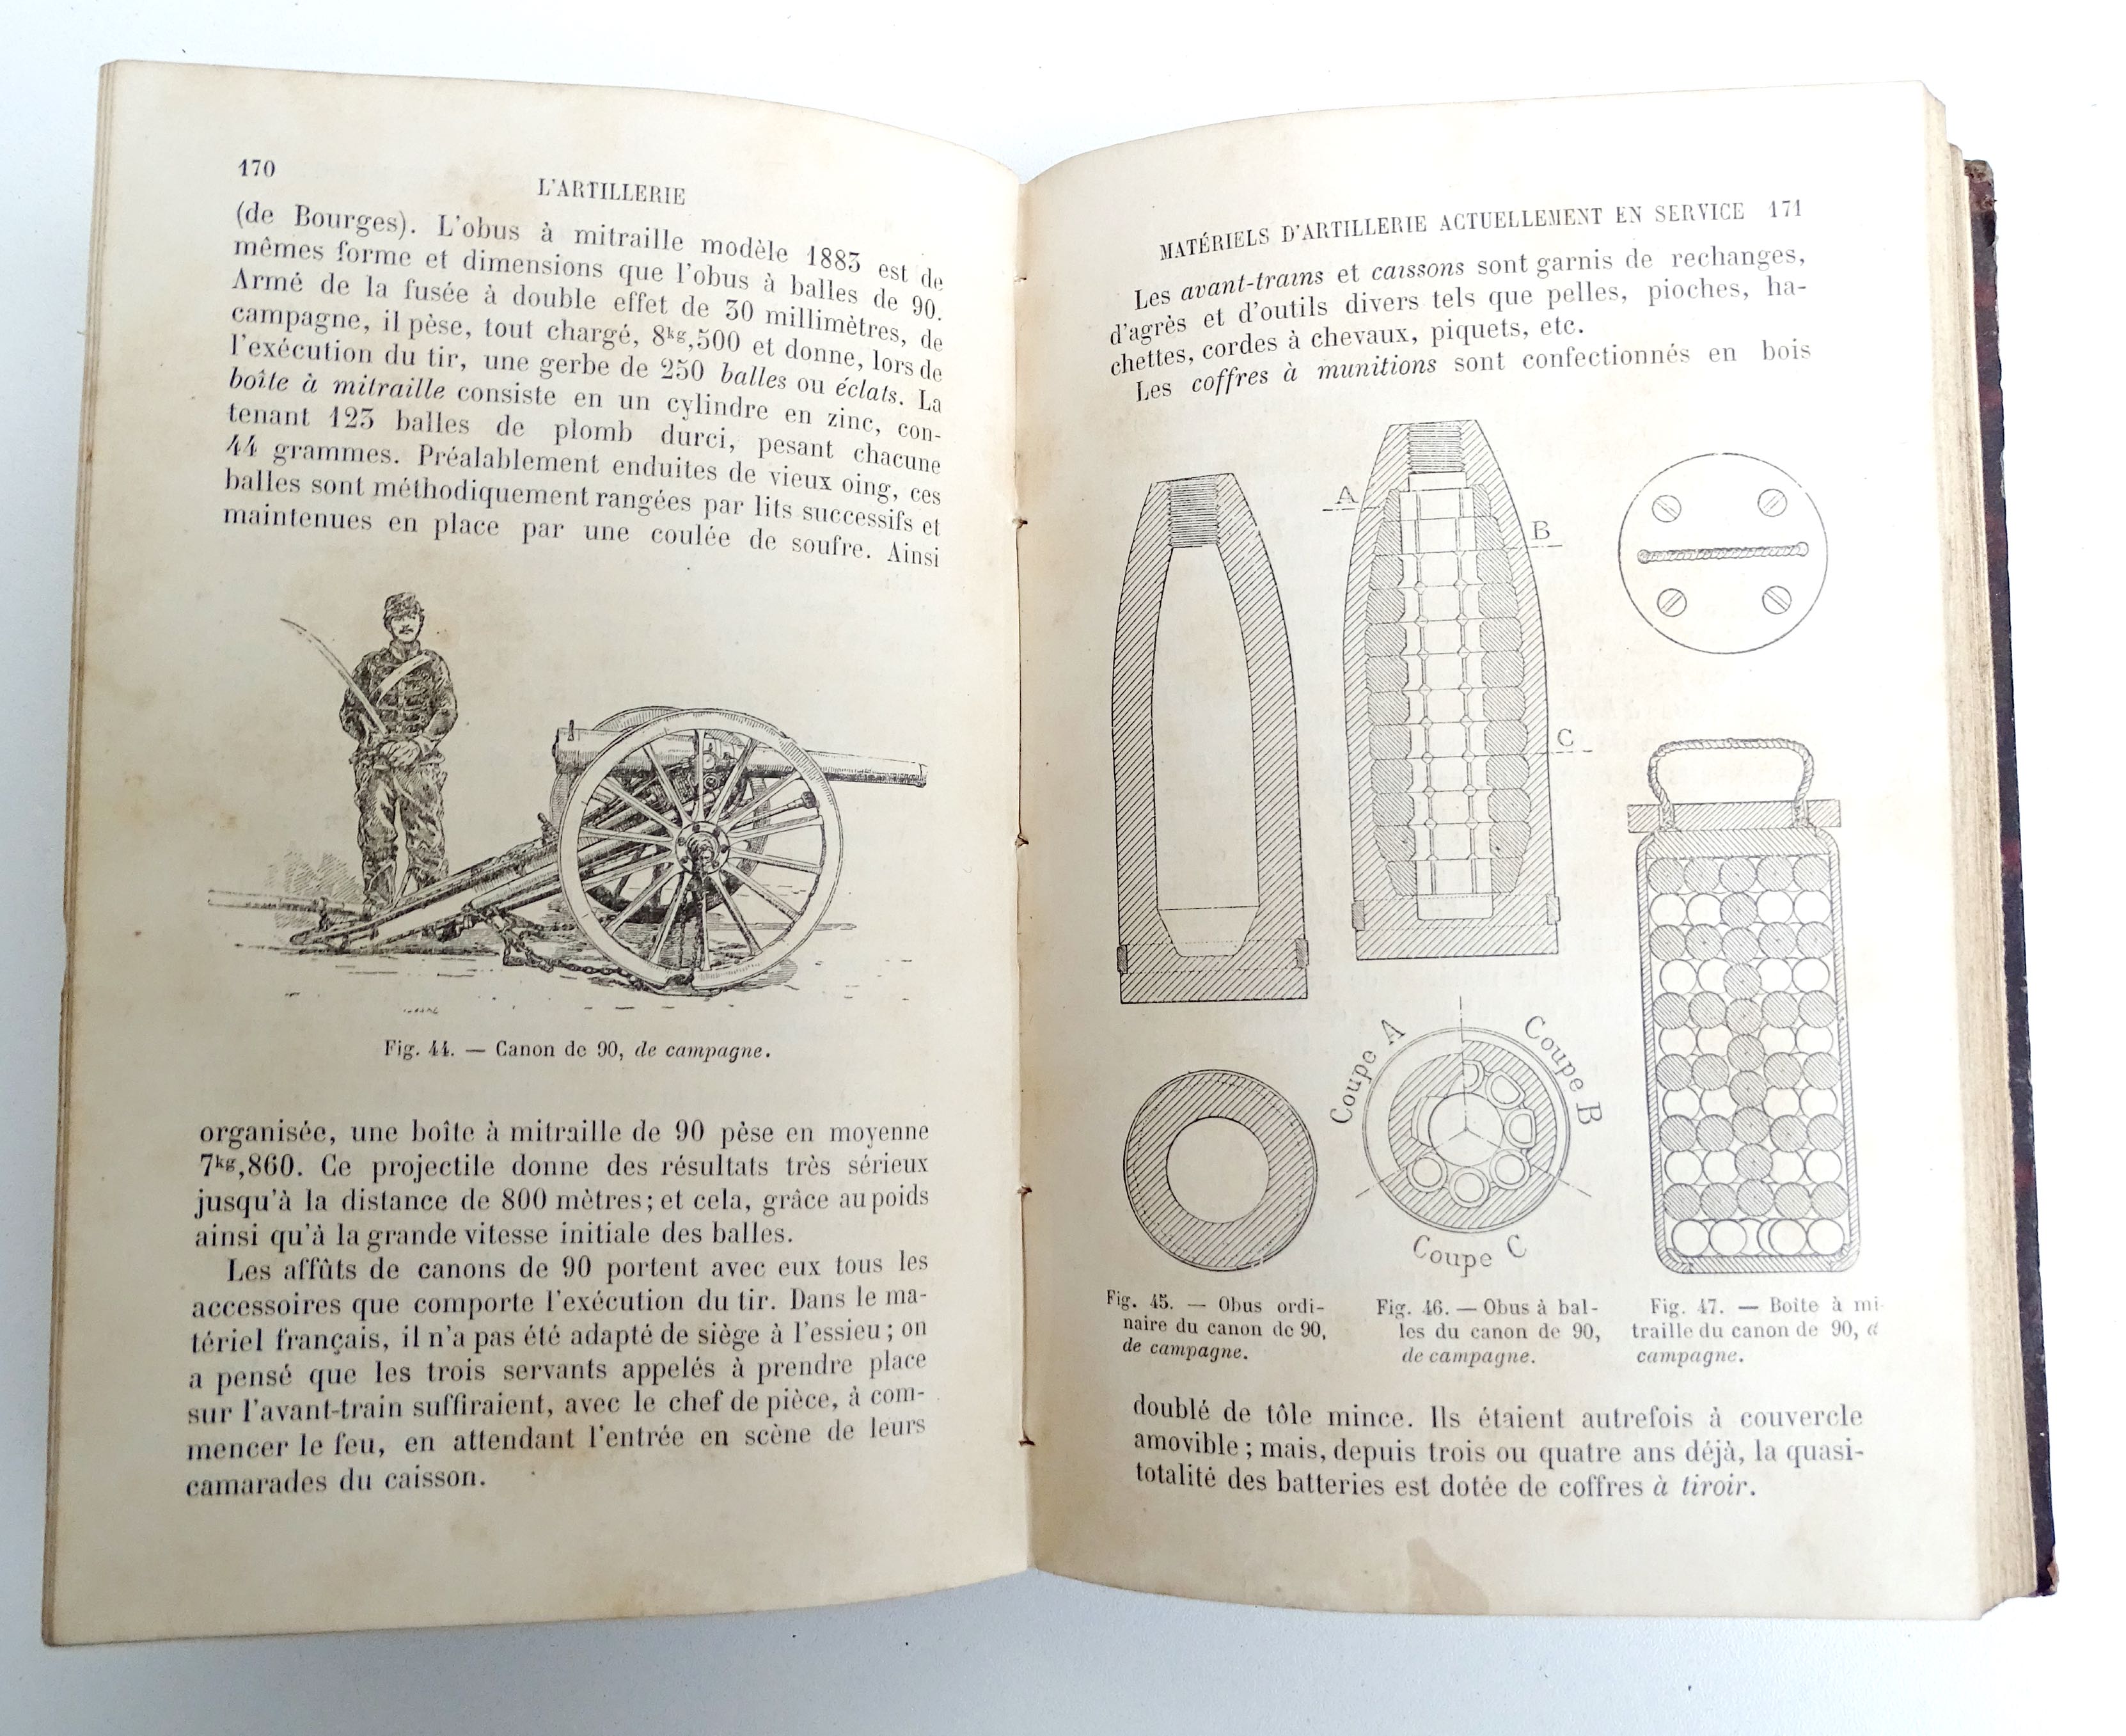 L&#039;artillerie par Le Lt-Colonel Hennebert  Biblioth&egrave;que des Merveilles 1887